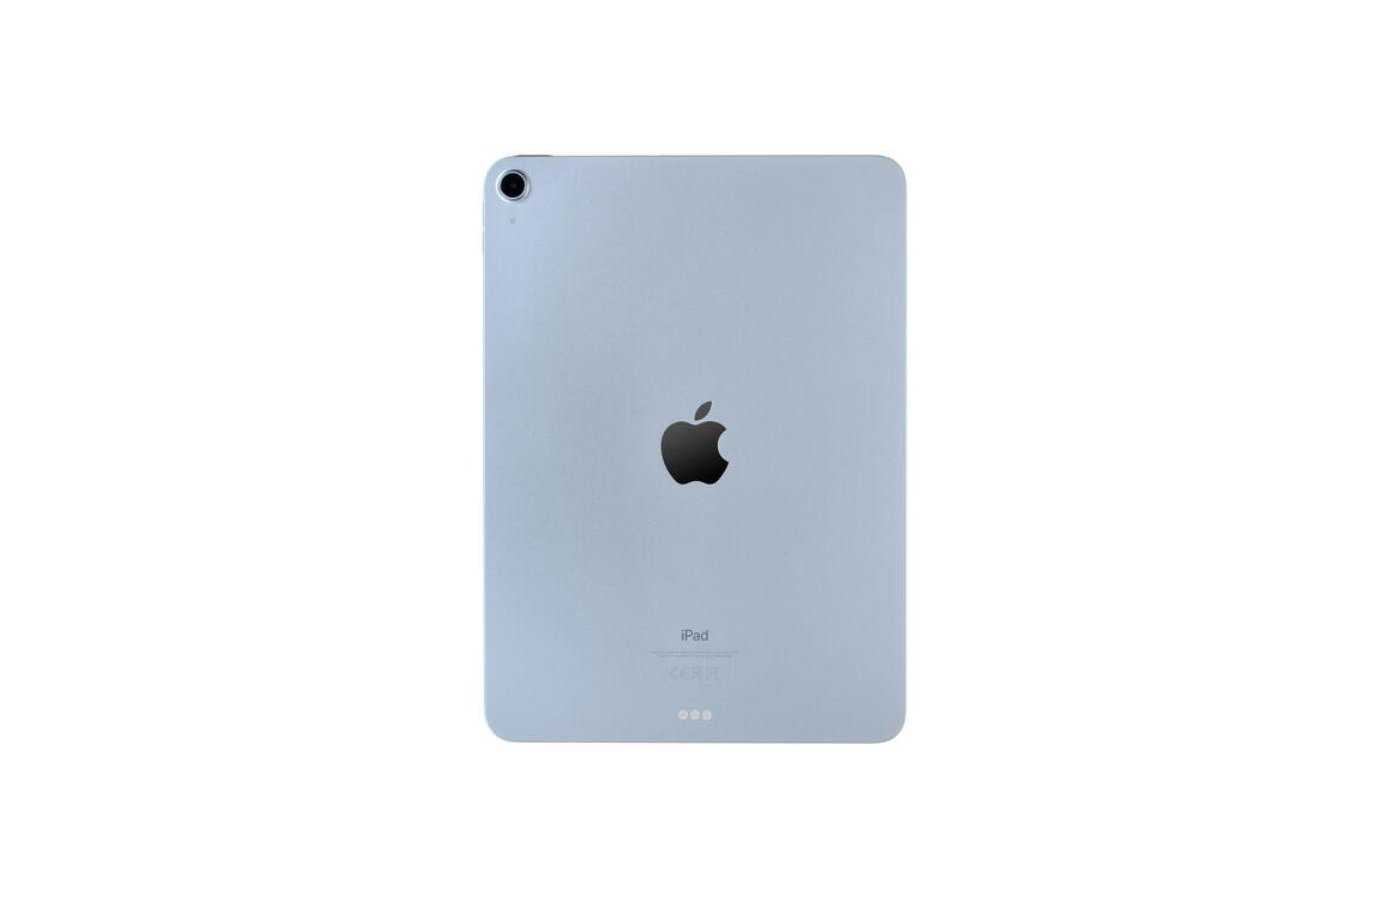 Apple ipad air wi fi 64 гб. Apple IPAD Air 2020 64gb. Apple IPAD Air 2020 Wi-Fi 64 ГБ. Планшет Apple IPAD Air 2020 64gb Wi-Fi + Cellular mygy2ru/a, 64gb, 3g, 4g, IOS. Apple IPAD Air (2020) 256gb Wi-Fi + Cellular Green.